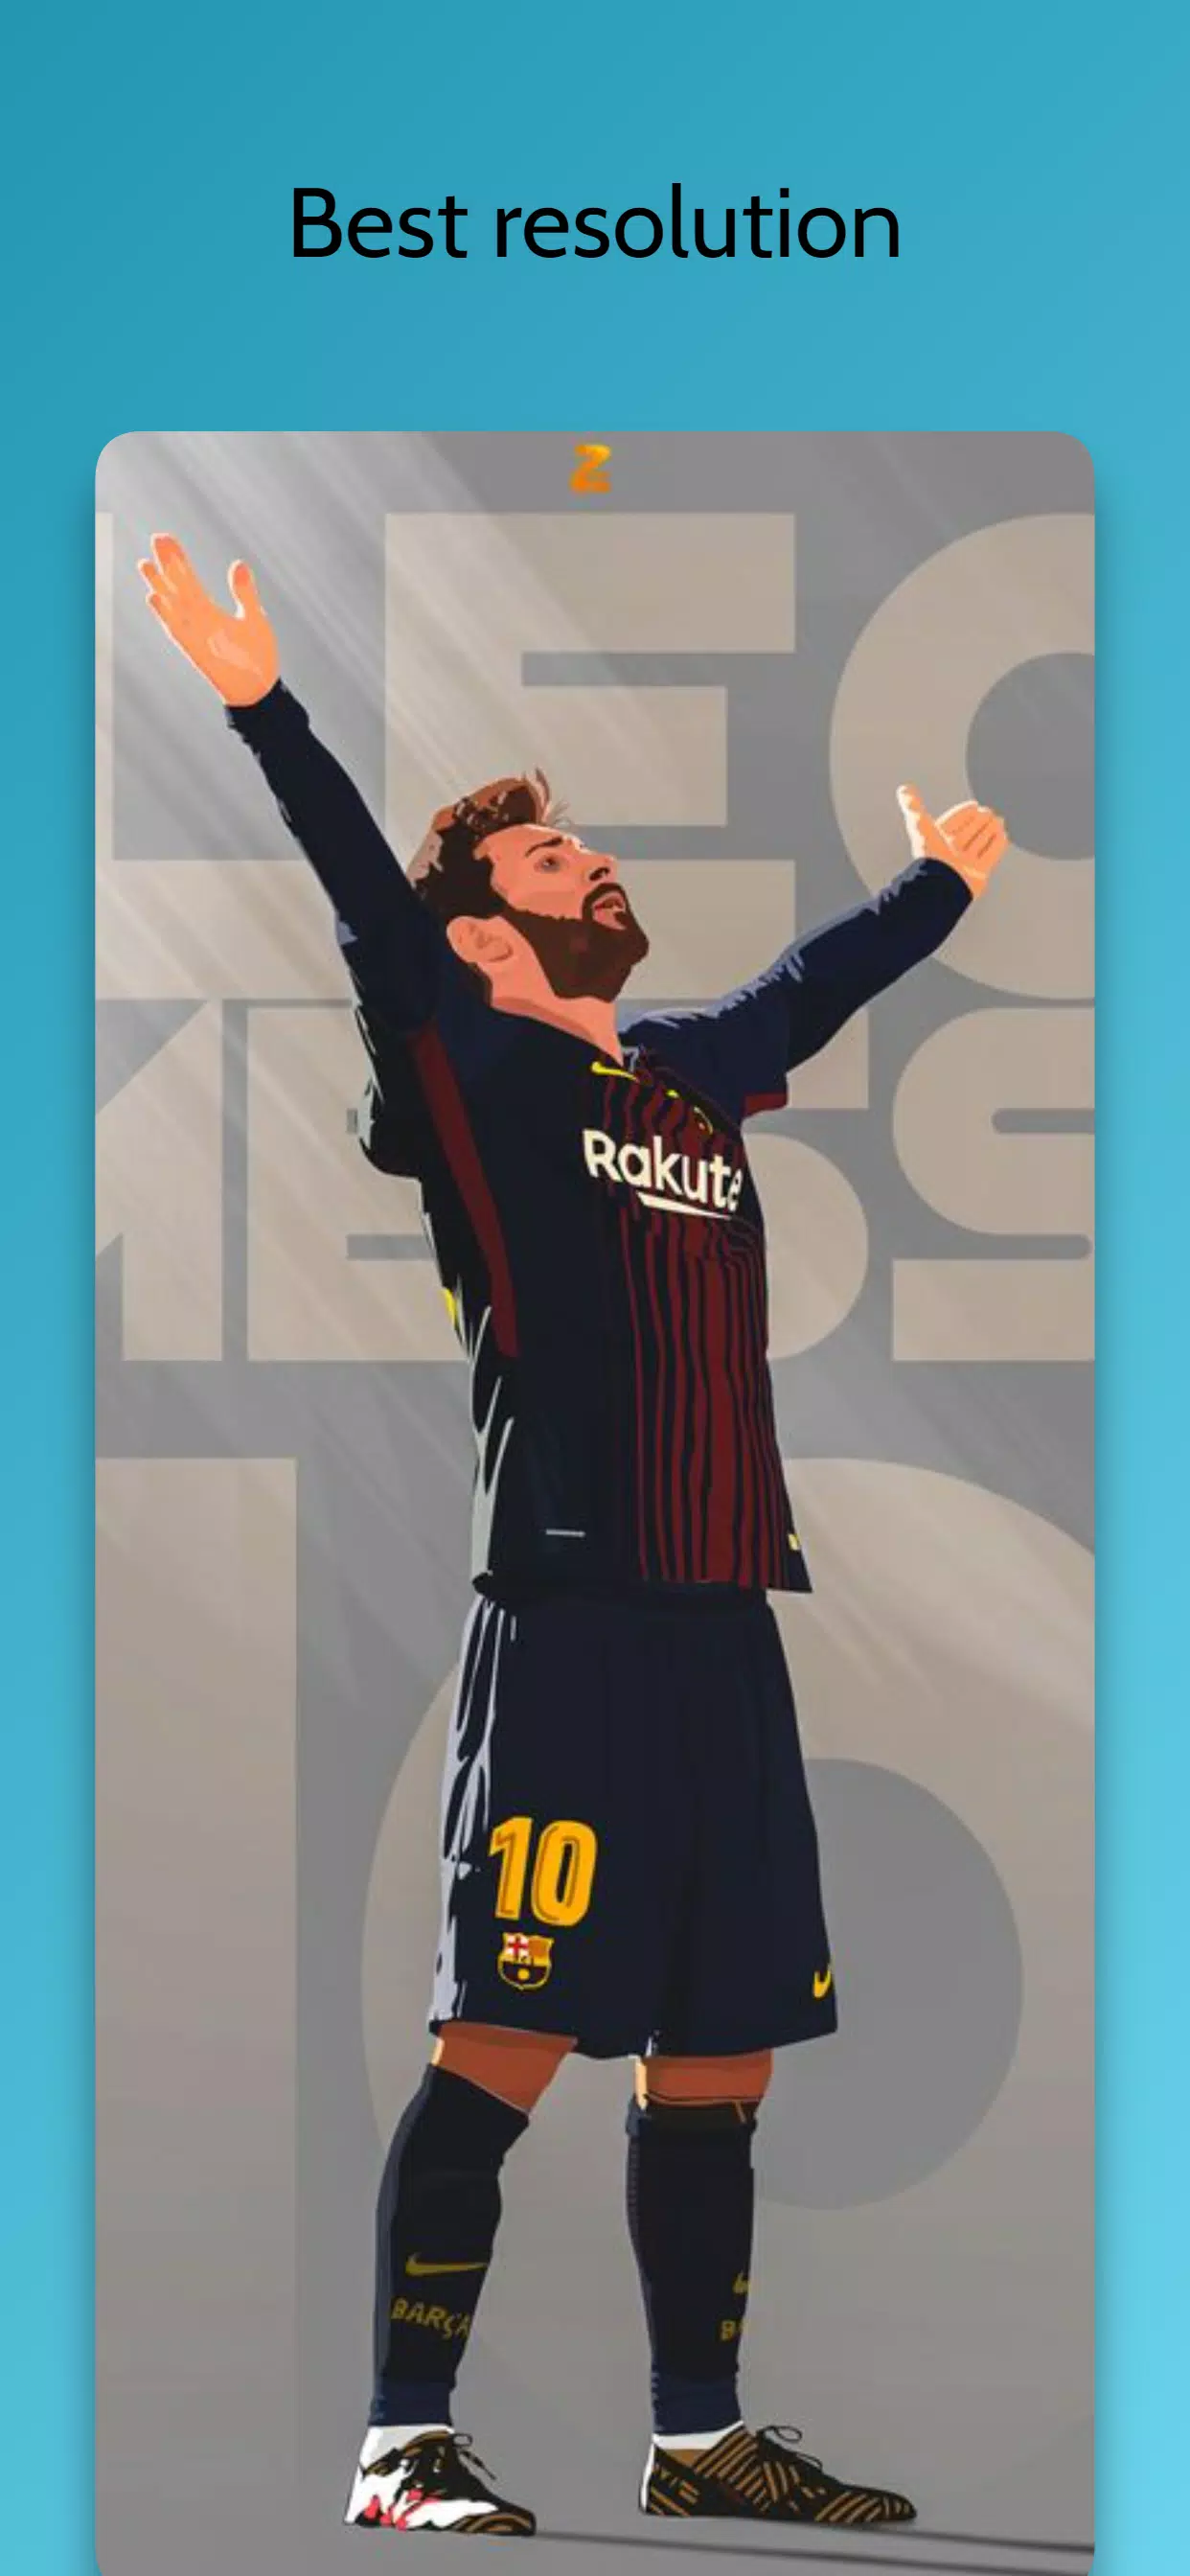 Những tấm hình nền về Lionel Messi sẽ khiến bạn trầm trồ và choáng ngợp khi các bức ảnh này gợi lên được vẻ đẹp và phong cách của siêu sao bóng đá này.